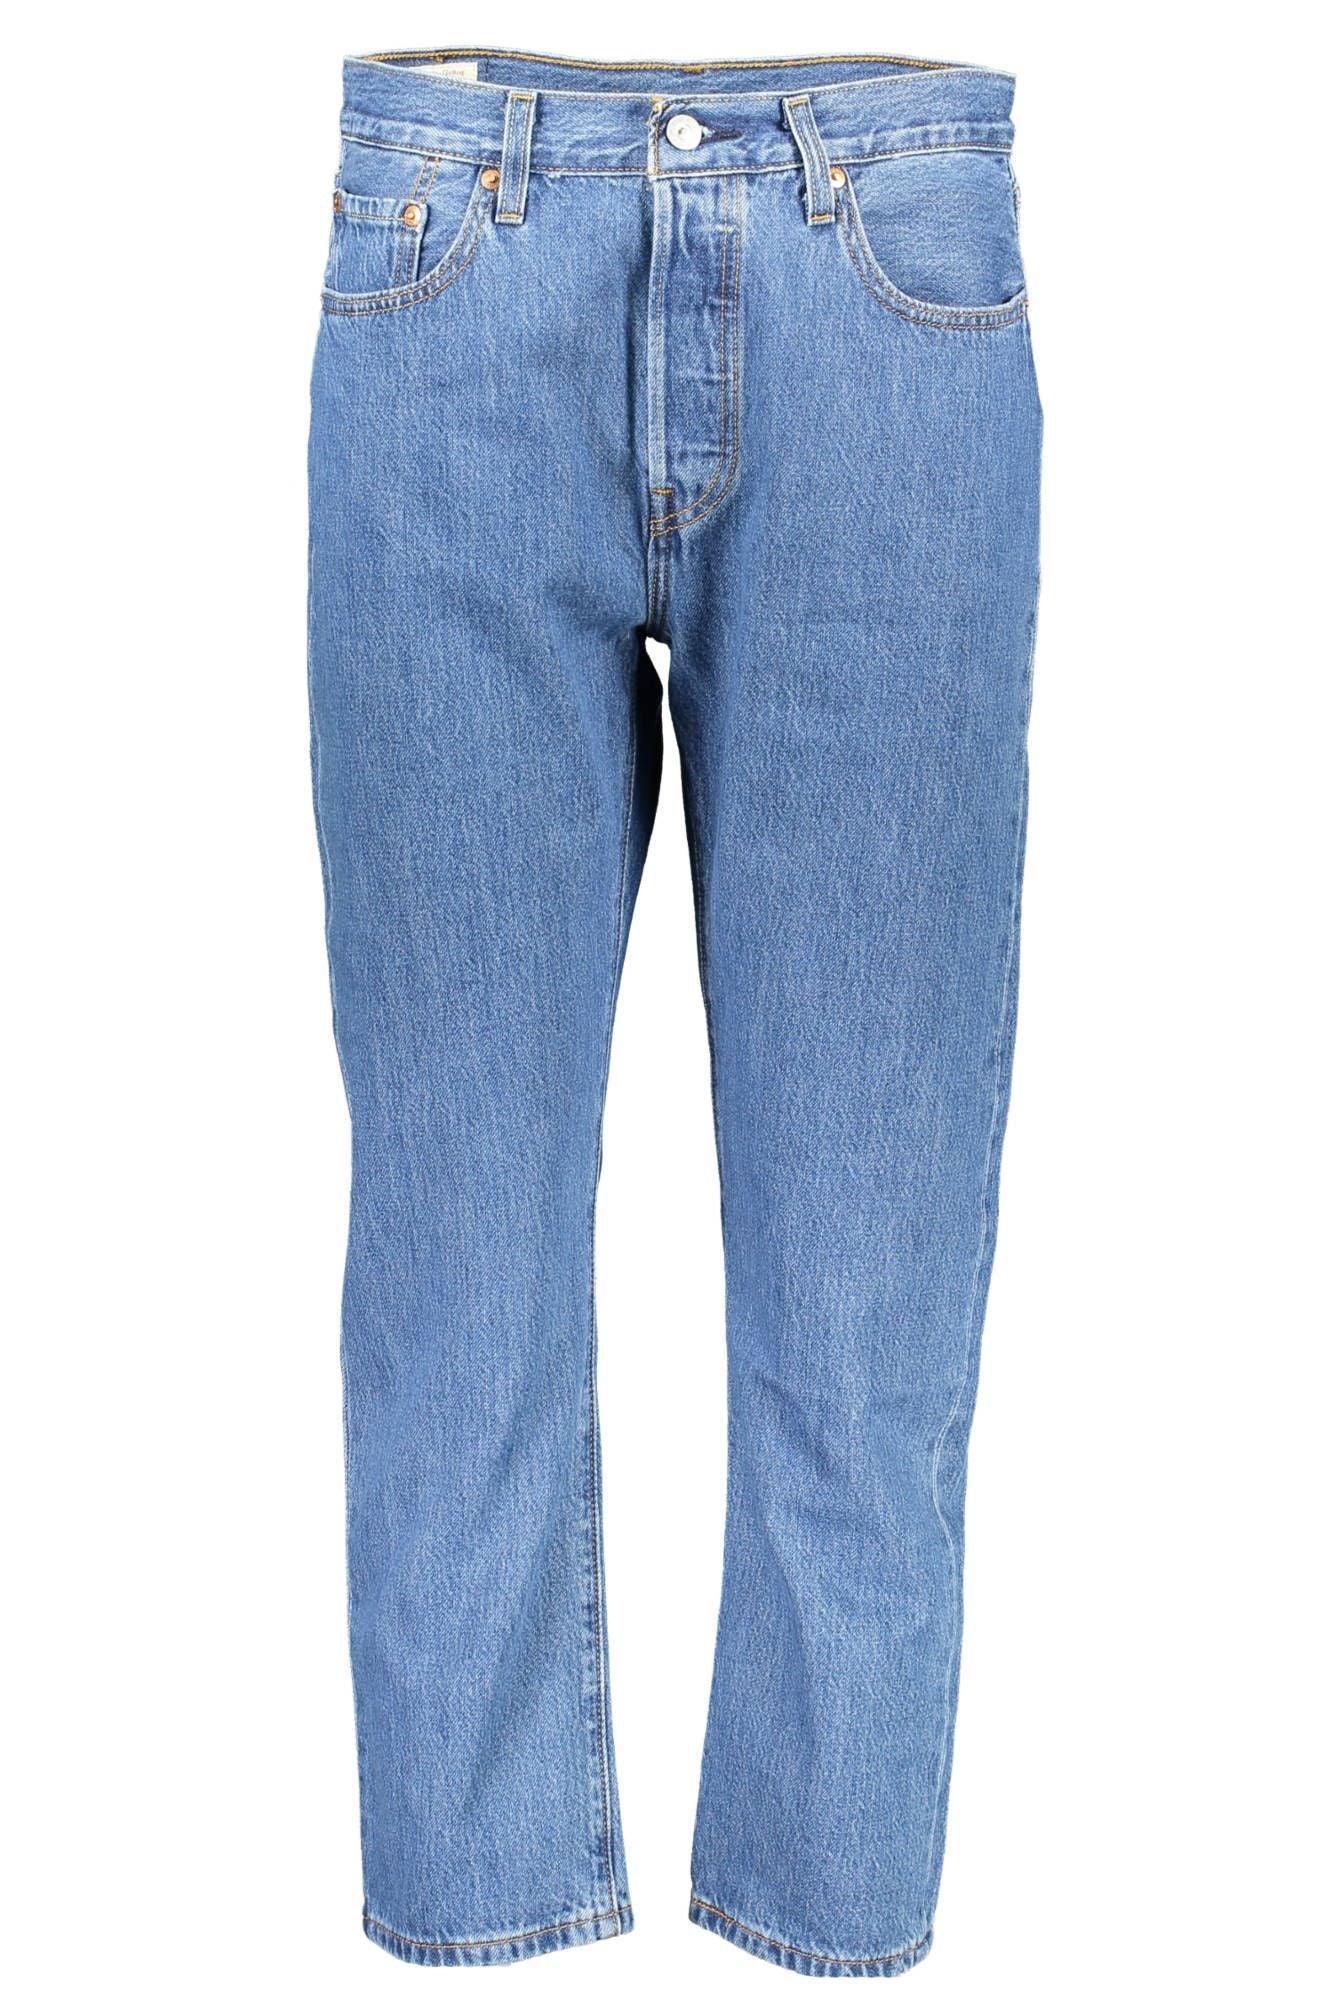 Levi's Chic Blue Cotton 5-Pocket Jeans for Women - PER.FASHION